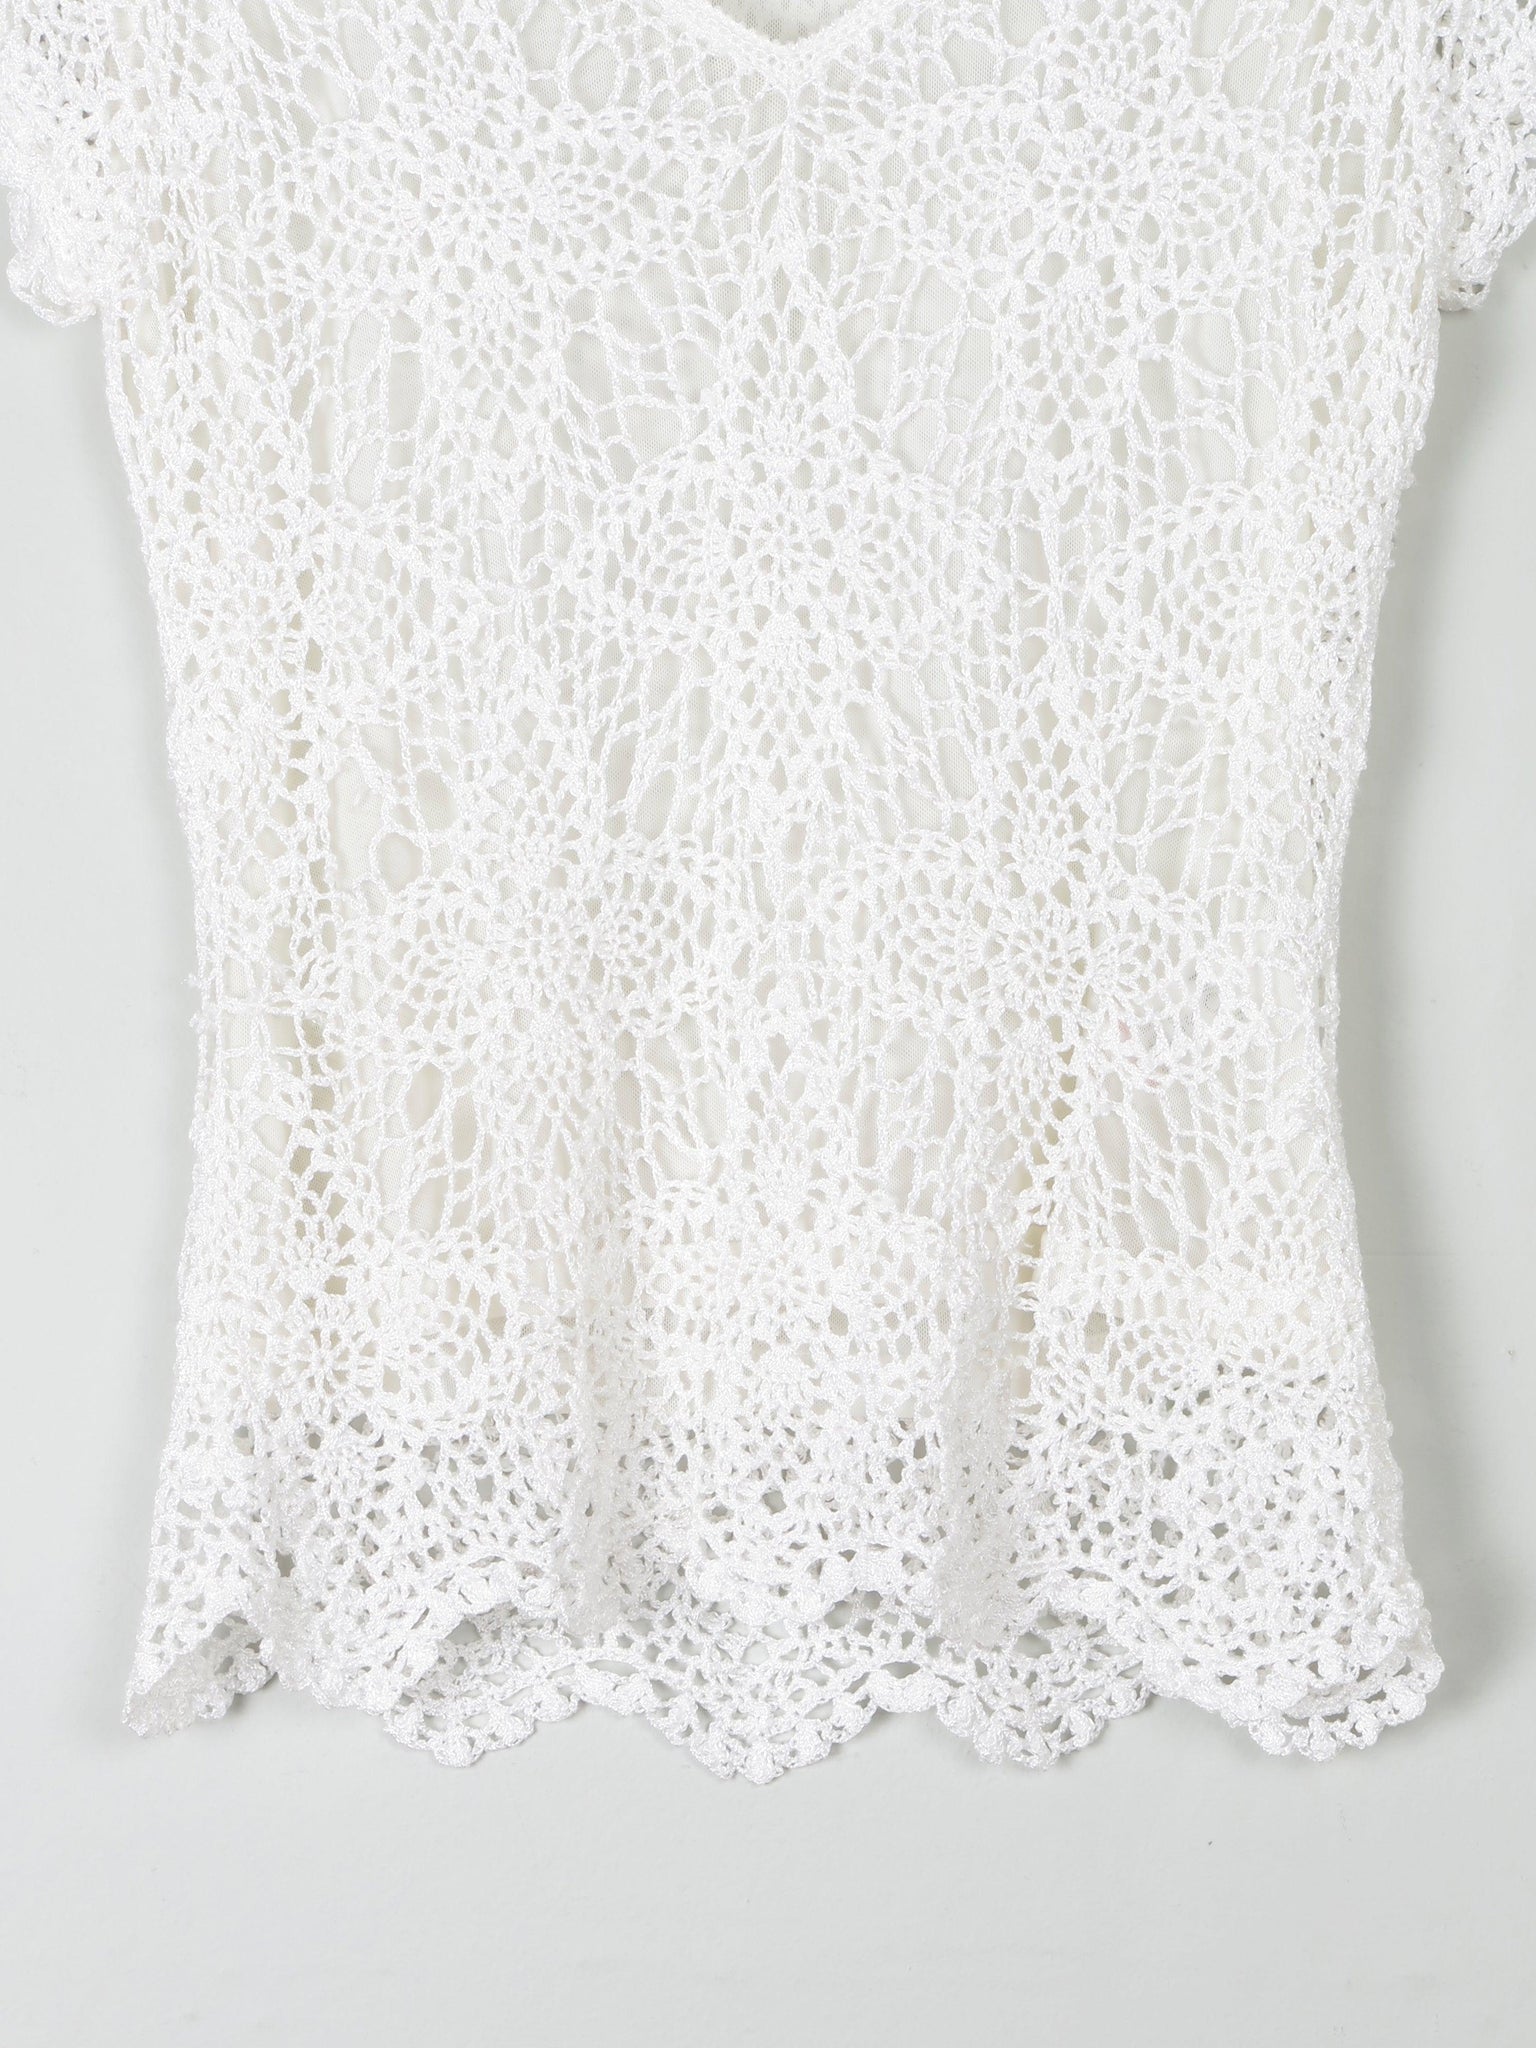 Women's Vintage White Crochet V-Neck Top S - The Harlequin